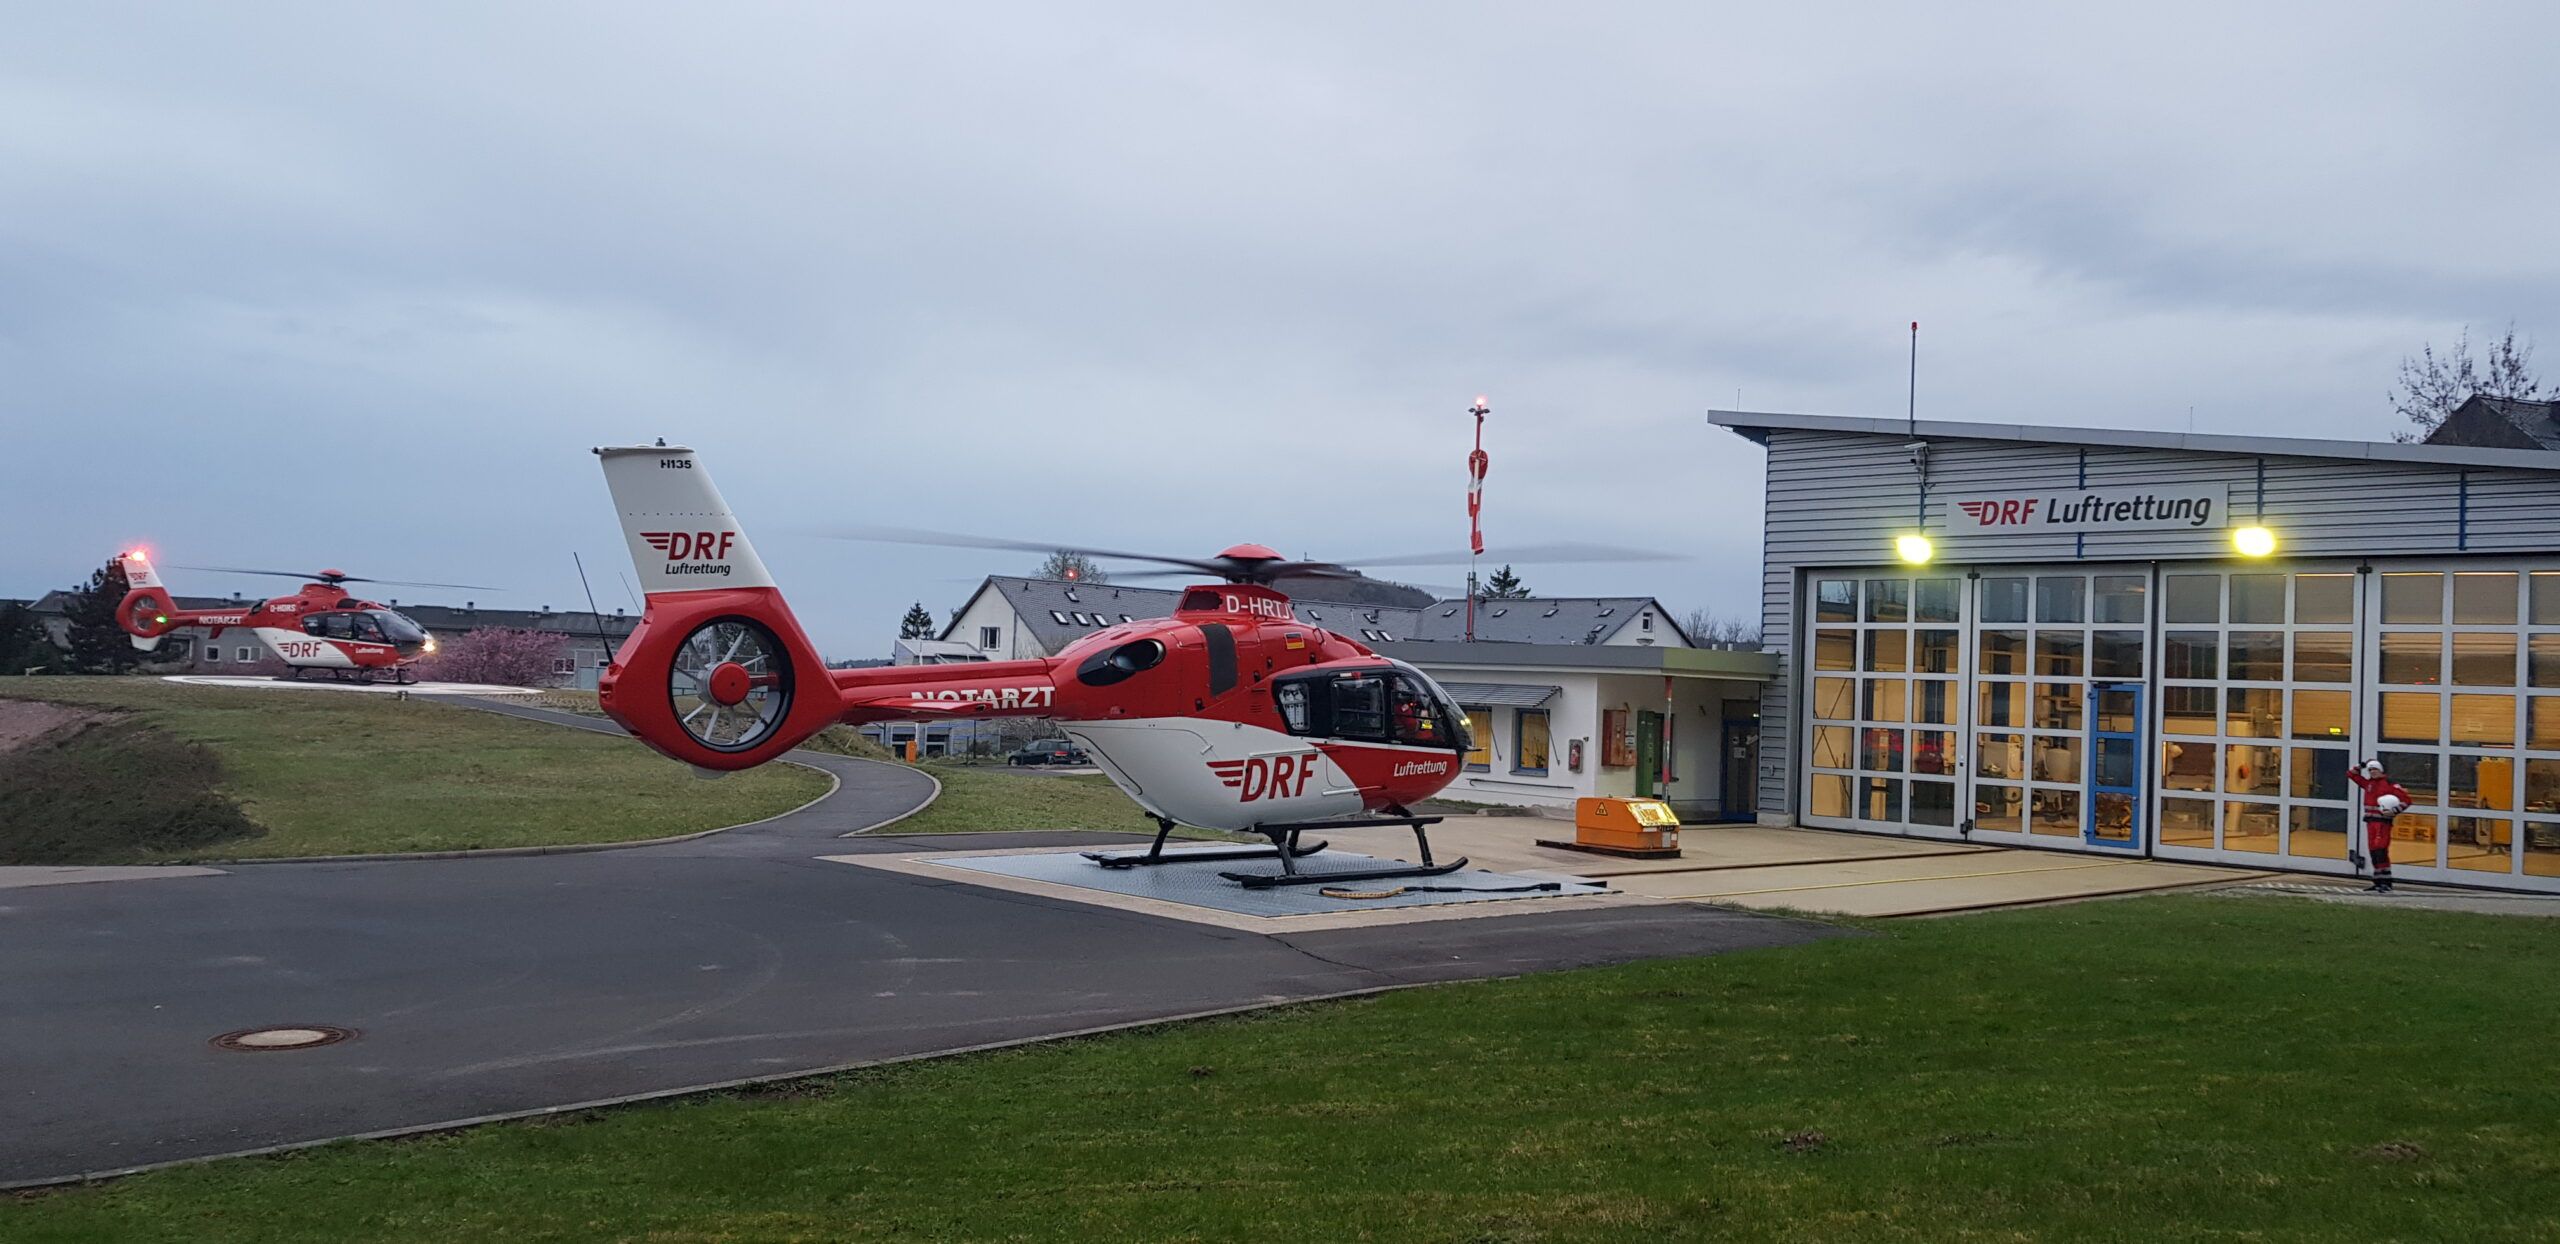 Seit dem 01. April kommt in Suhl ein Hubschrauber des Typs H135 als neuer Christoph 60 zum Einsatz. Dank Glascockpit, Vier-Achsen-Autopilot und Anti-Kollisions-System sorgt die Maschine für mehr Sicherheit, die Patienten und Crews zugutekommt. 